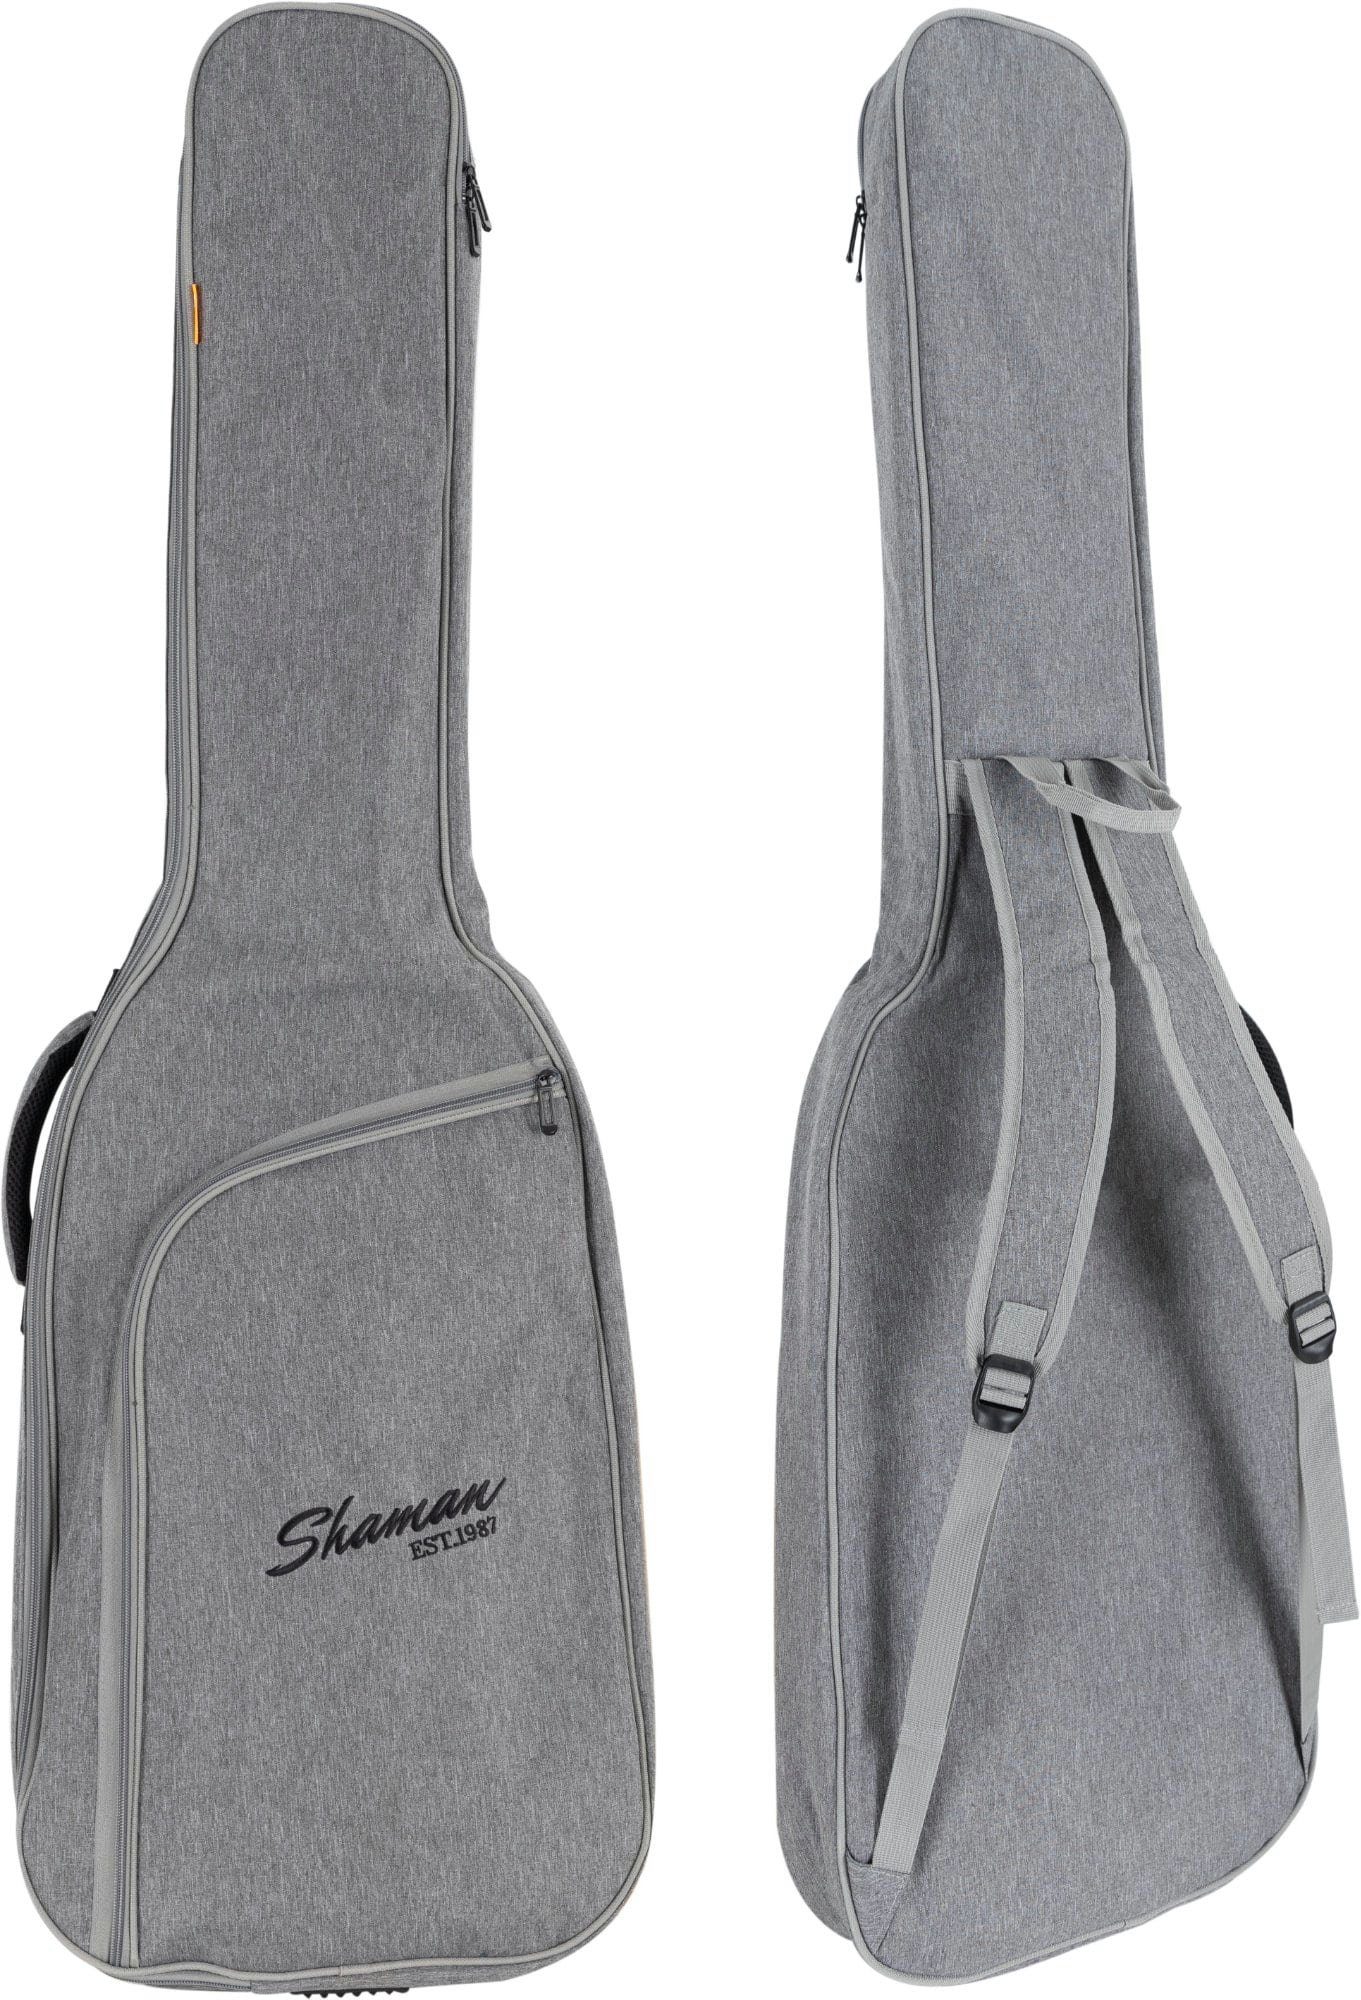 Shaman Gitarrentasche BGB-122 GY Instrumentenhals gepolsterte Rucksack-Gurte & E-Bass Tasche Fixierung Premium-Line, für